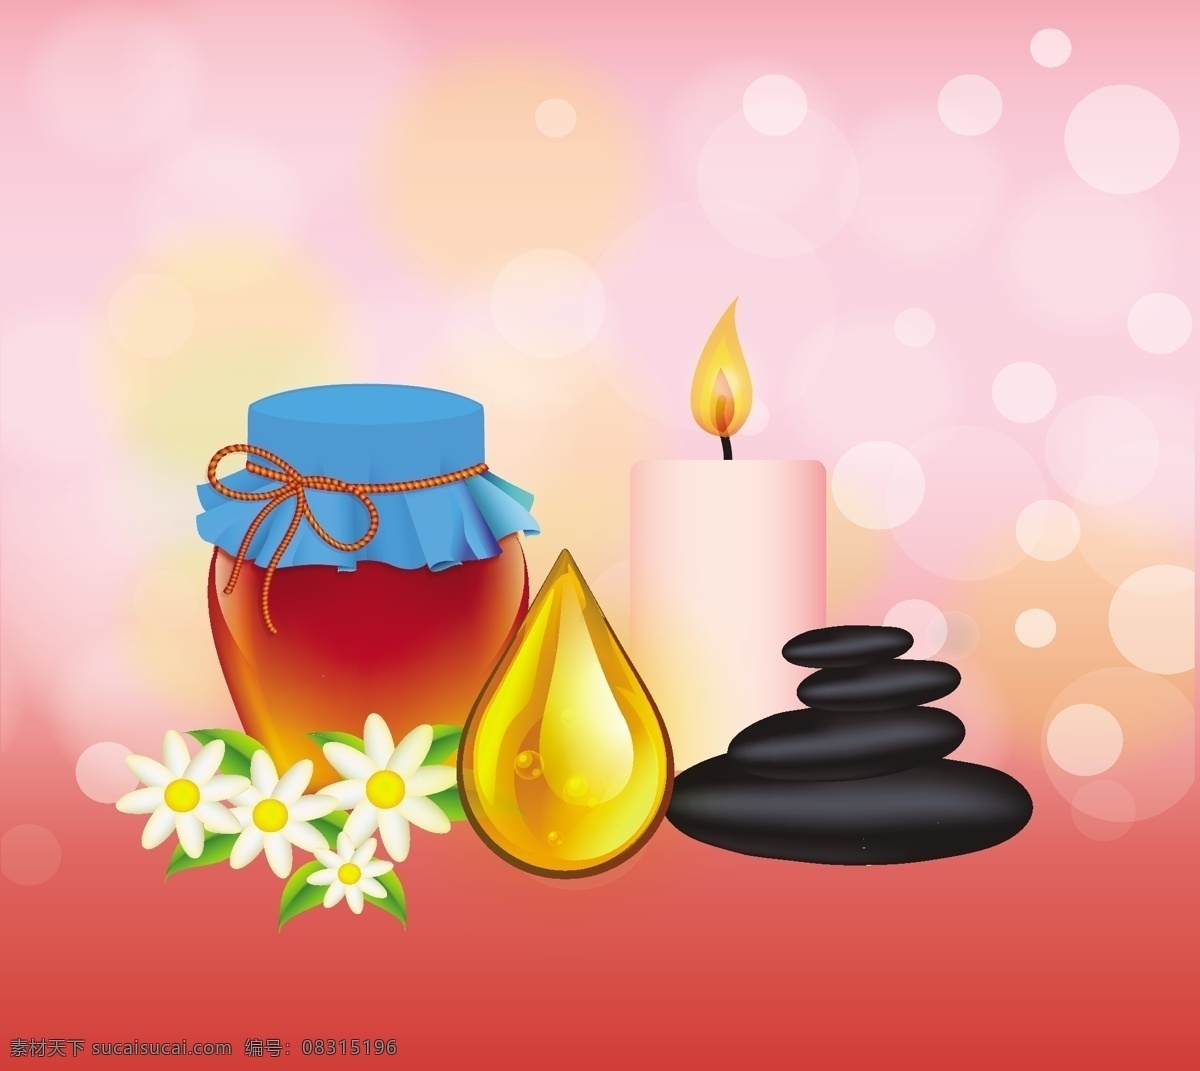 唯美 美容护肤 插画 唯美插画 水滴 蜡烛 唯美背景 花卉花朵 矢量素材 蜂蜜